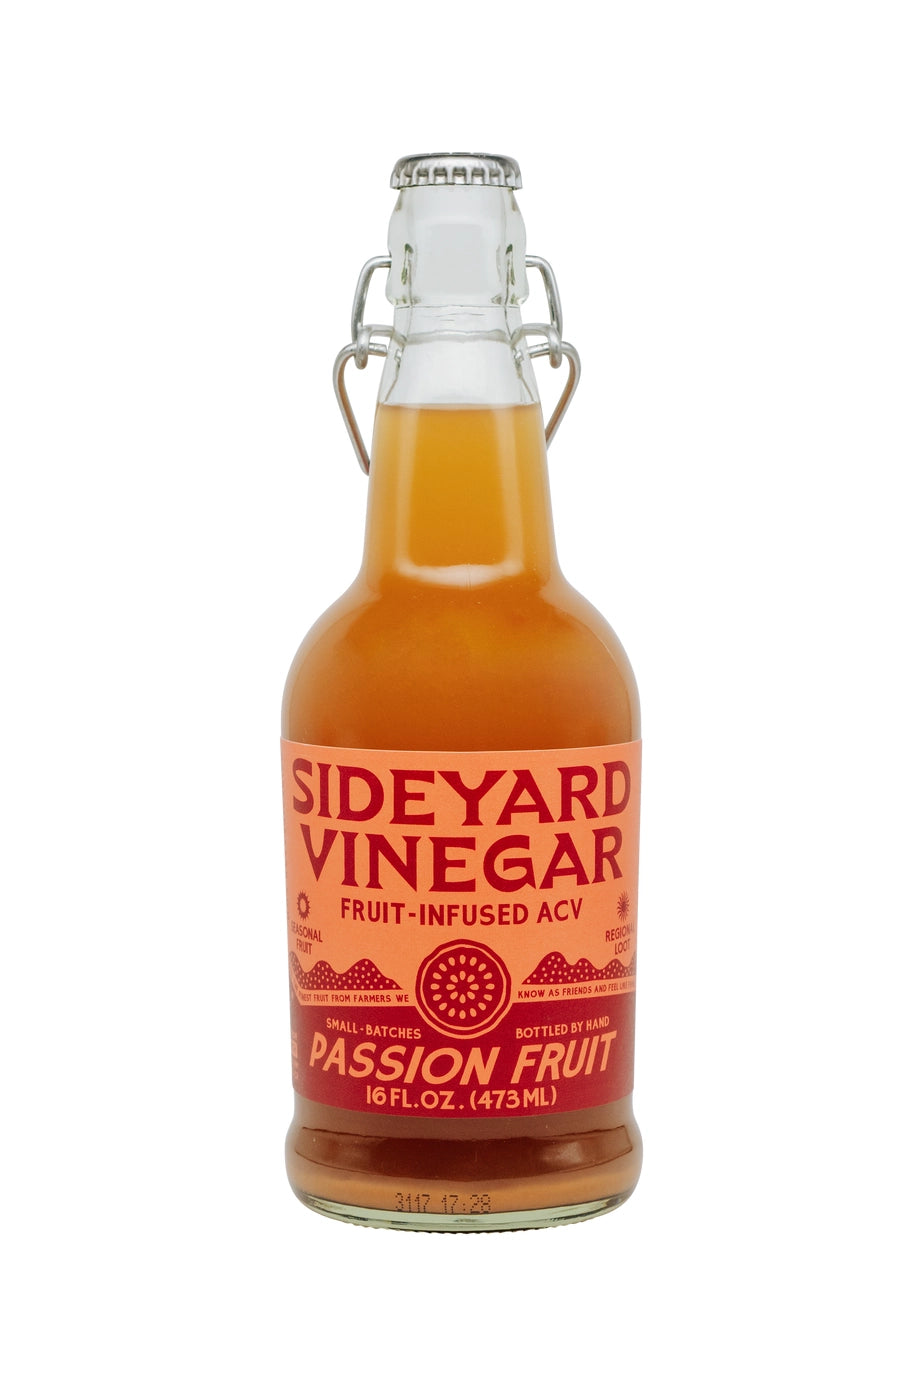 Passion Fruit Infused Vinegar by Sideyard Shrubs